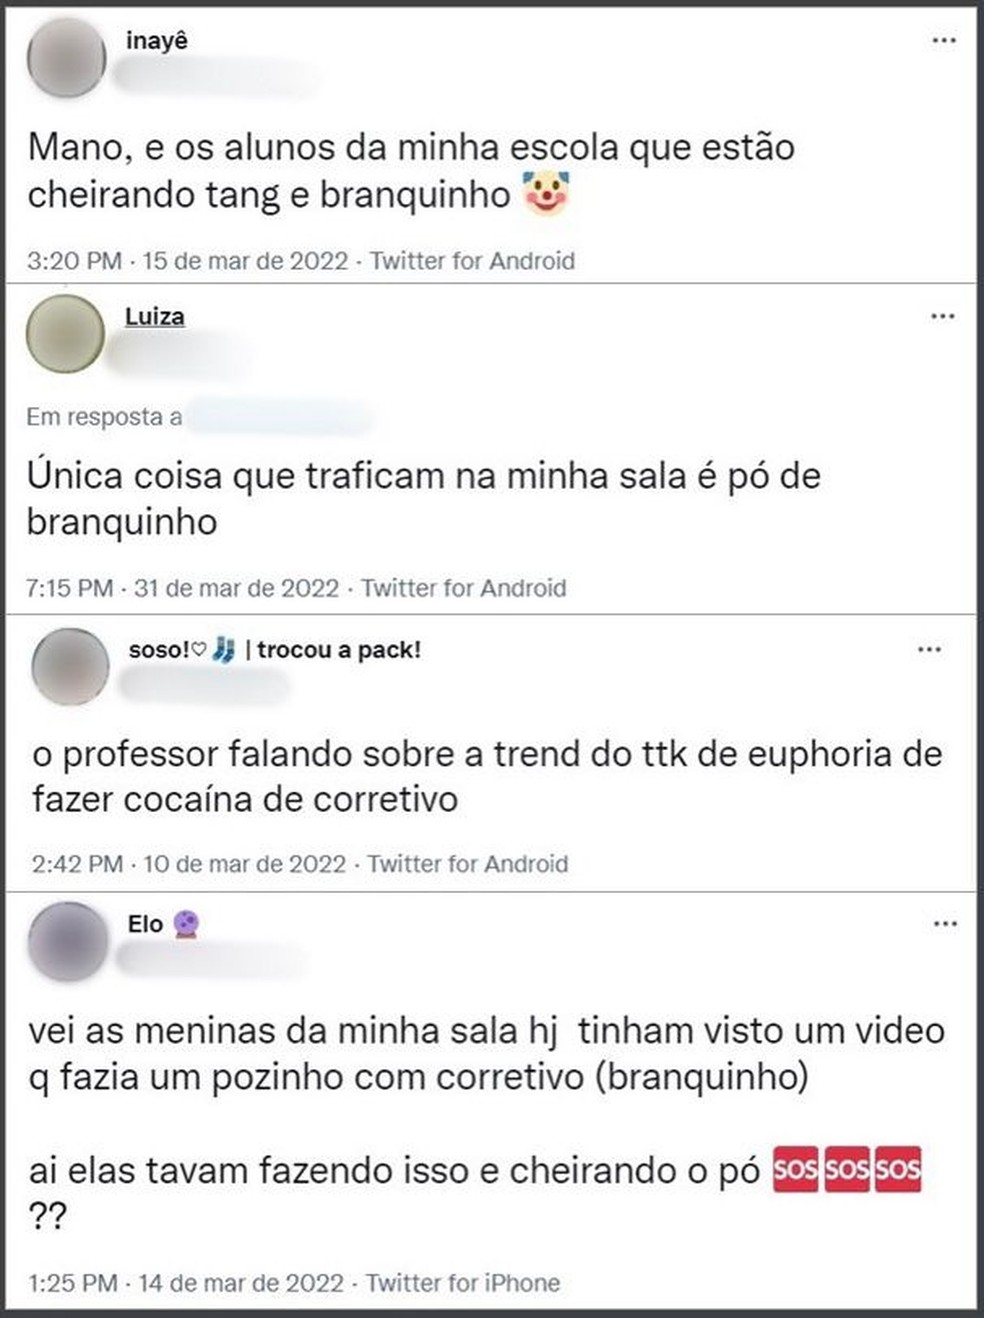 Relato de estudantes sobre o novo "trend" do líquido correto em pós nas escolas brasileiras. — Foto: Reprodução